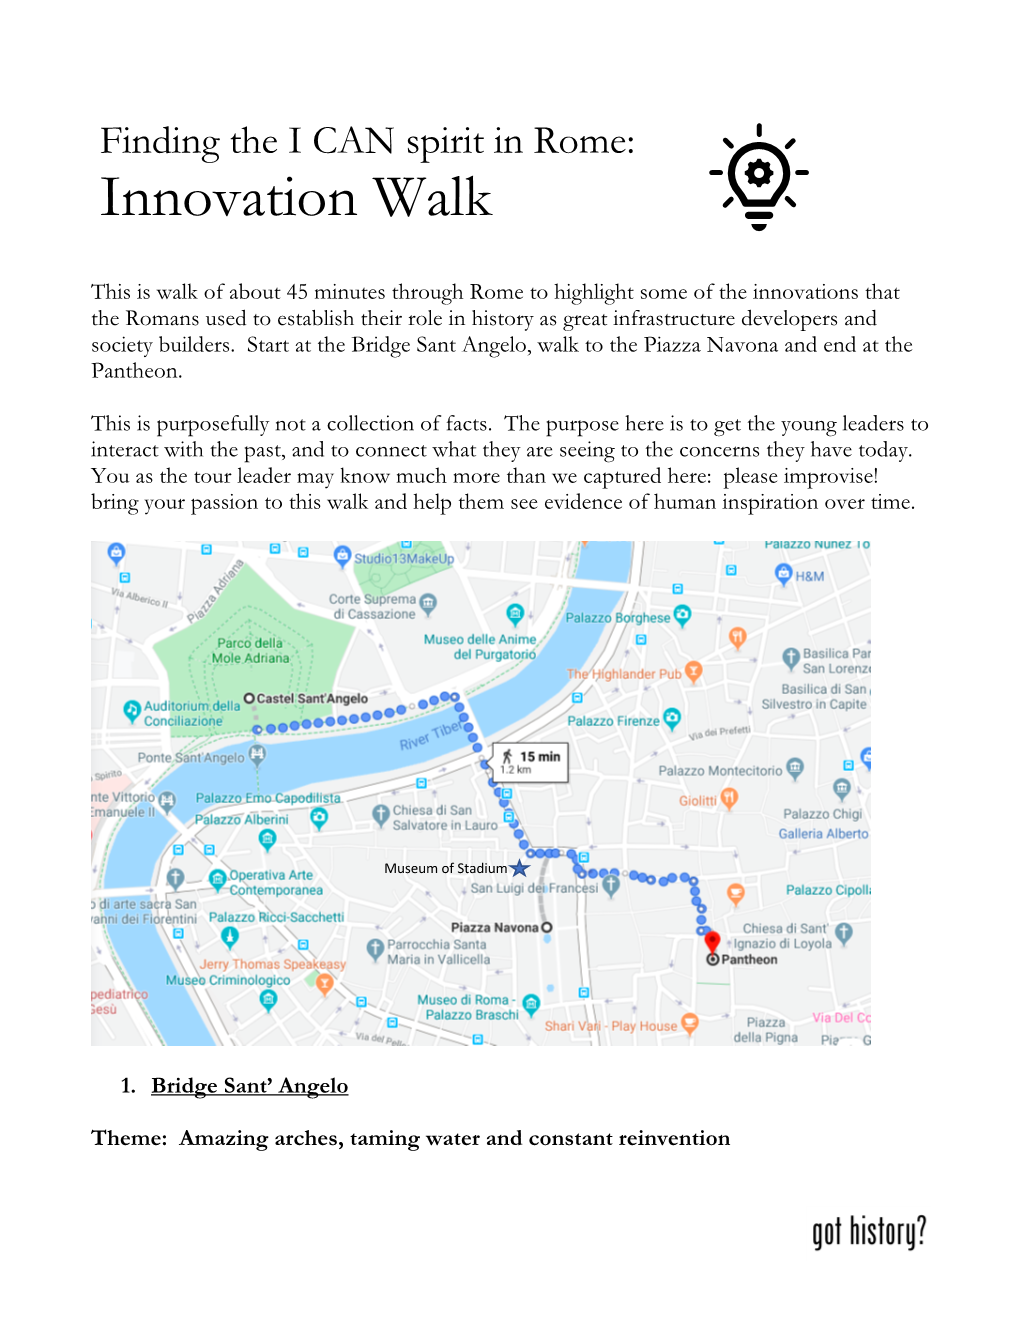 Innovation Walk